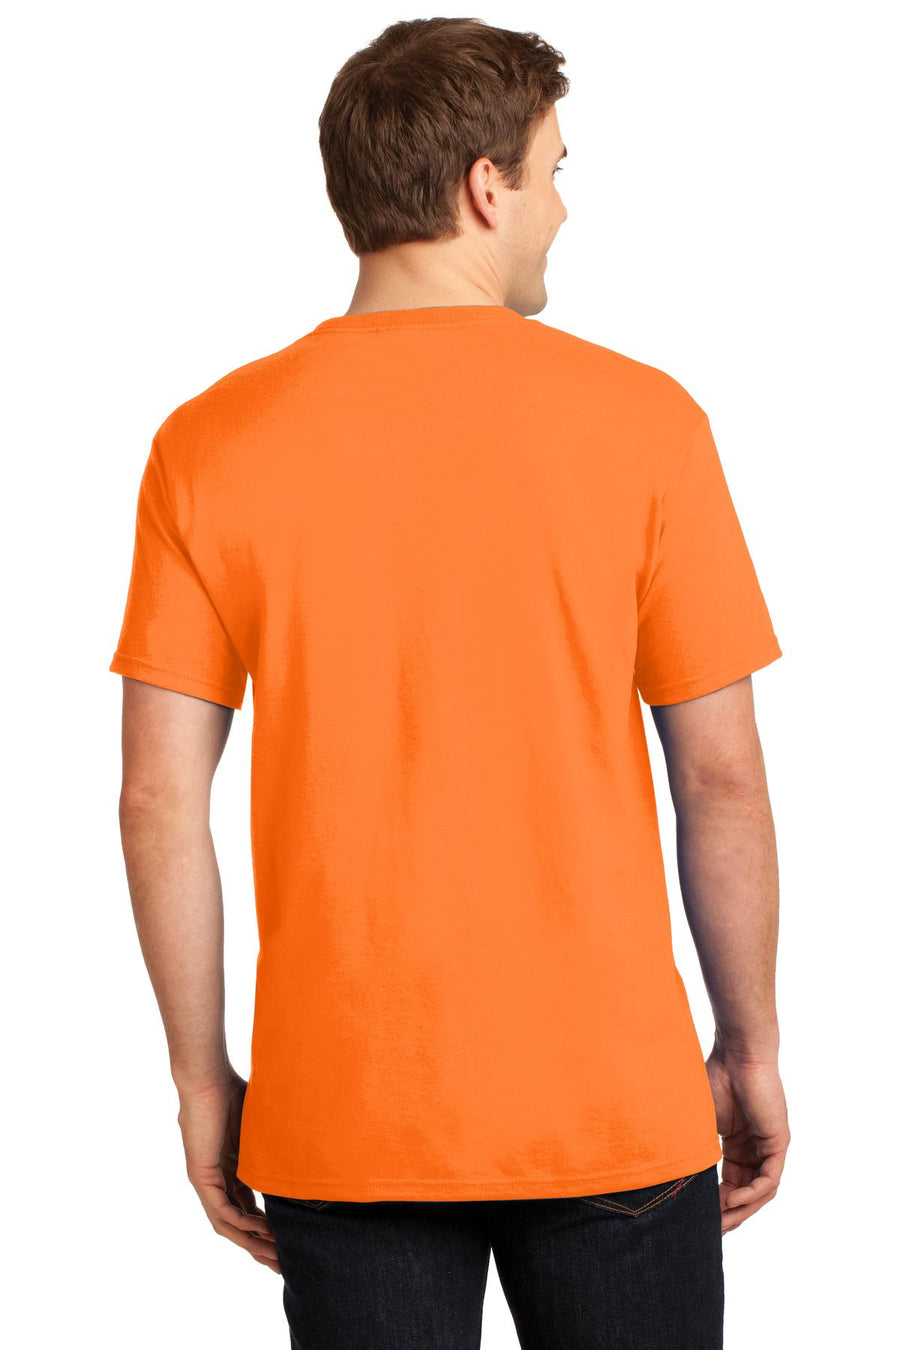 29MP-Safety Orange-back_model